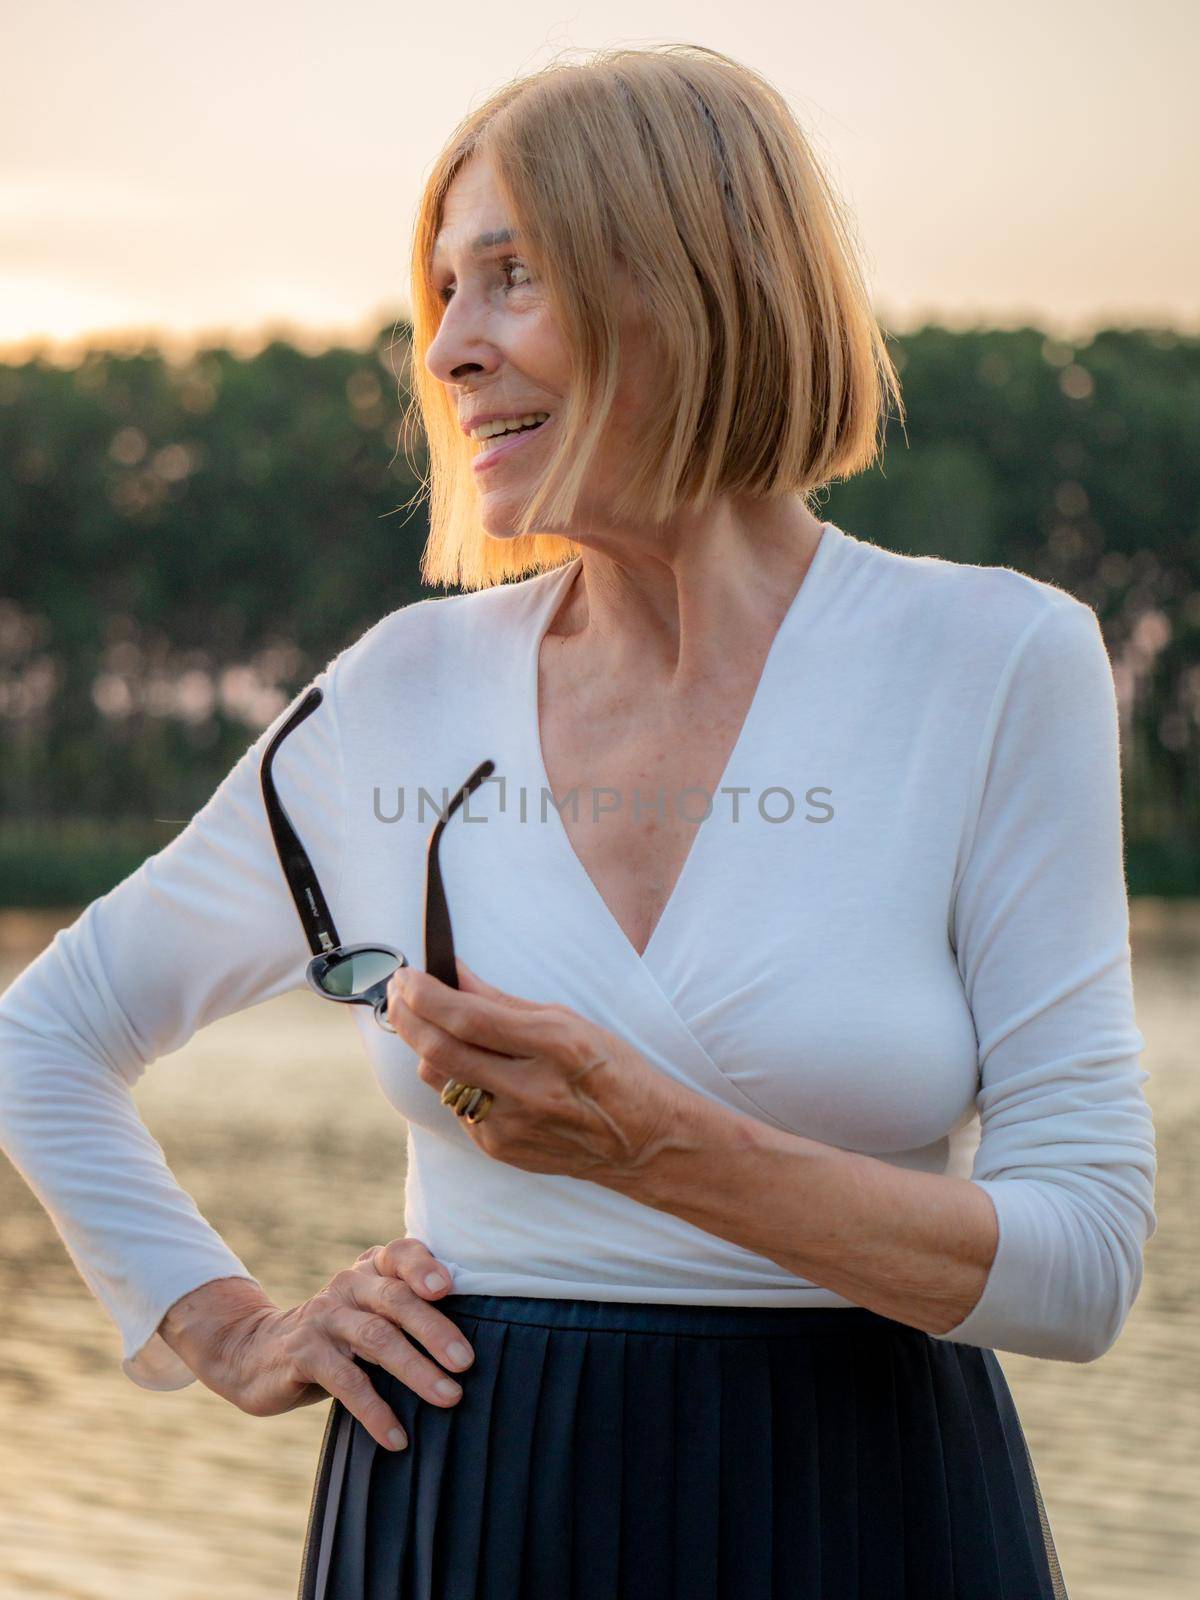 joyful senior fit elegant lady dressed white and blue wearing sunglasses enjoying nature in summer